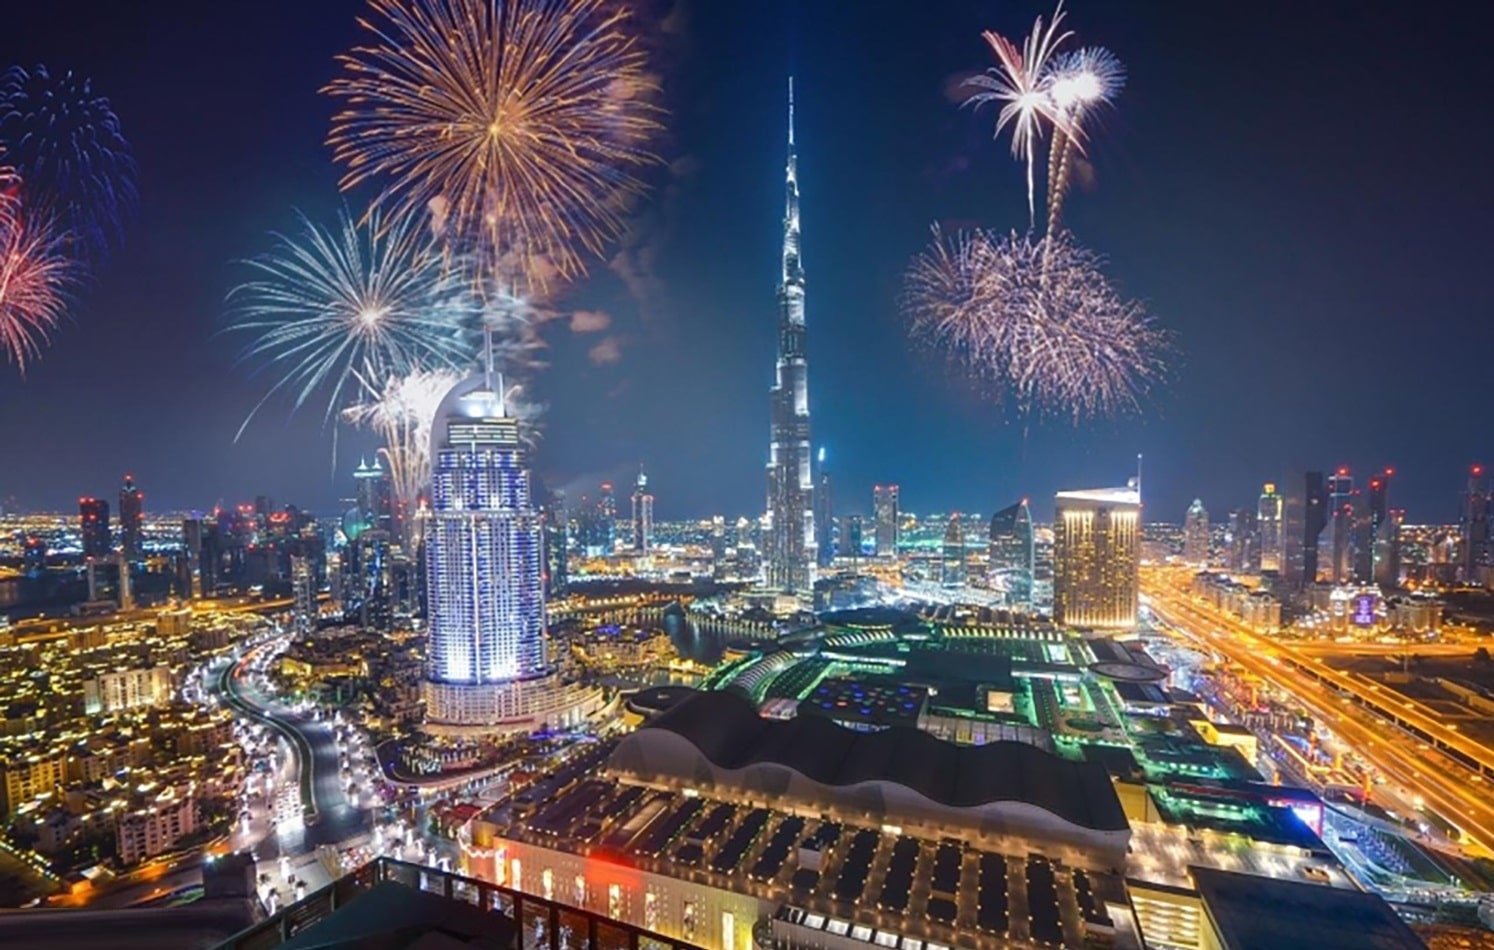 شاهد احتفالات رأس السنة الميلادية في برج خليفة